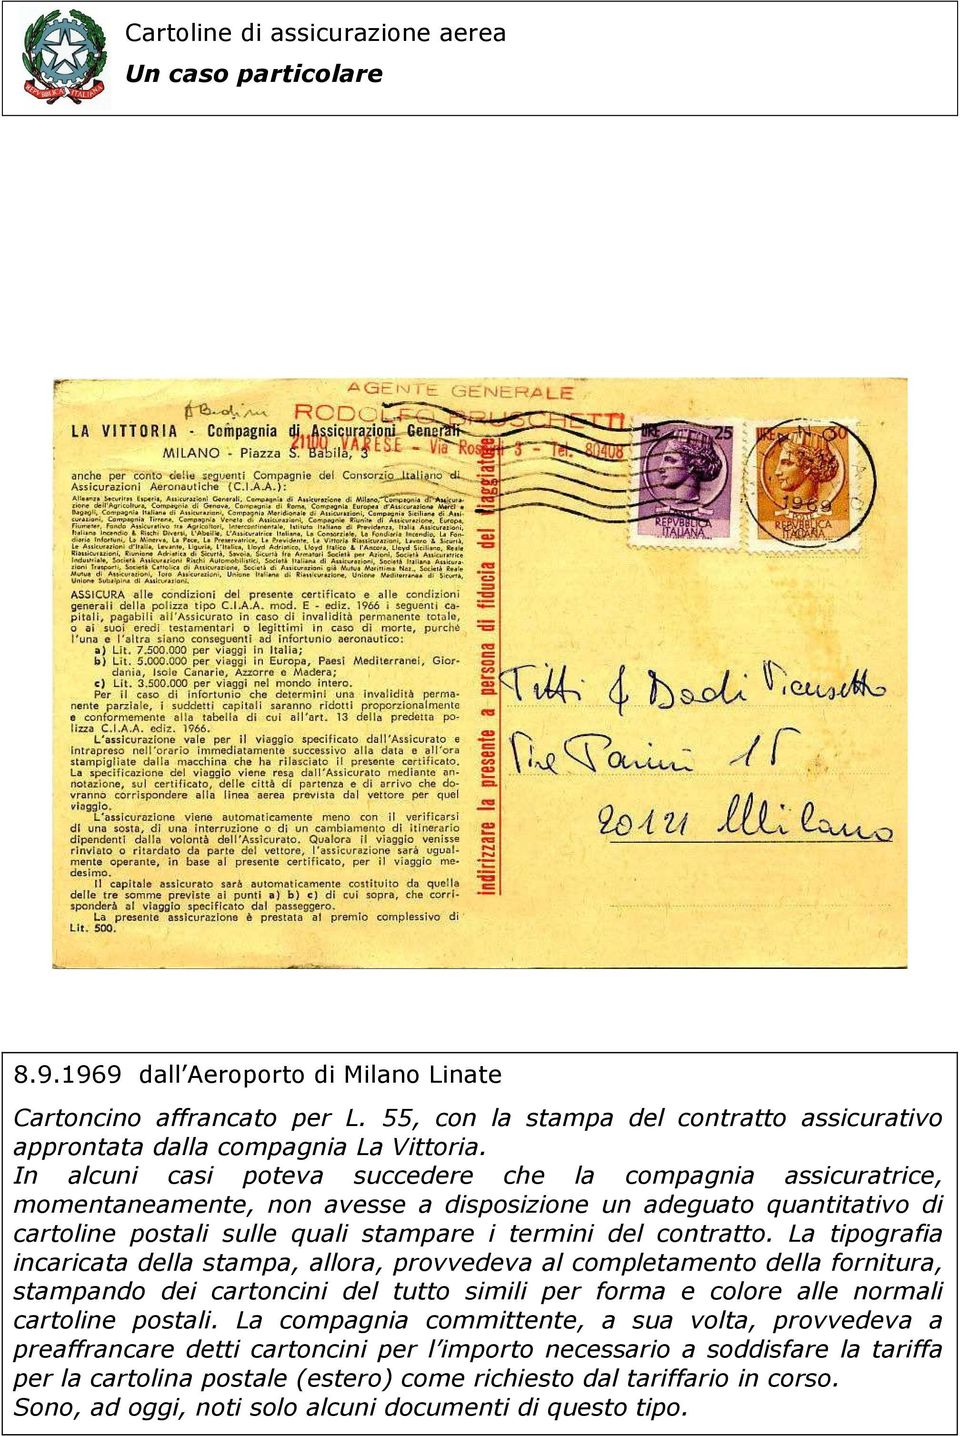 La tipografia incaricata della stampa, allora, provvedeva al completamento della fornitura, stampando dei cartoncini del tutto simili per forma e colore alle normali cartoline postali.